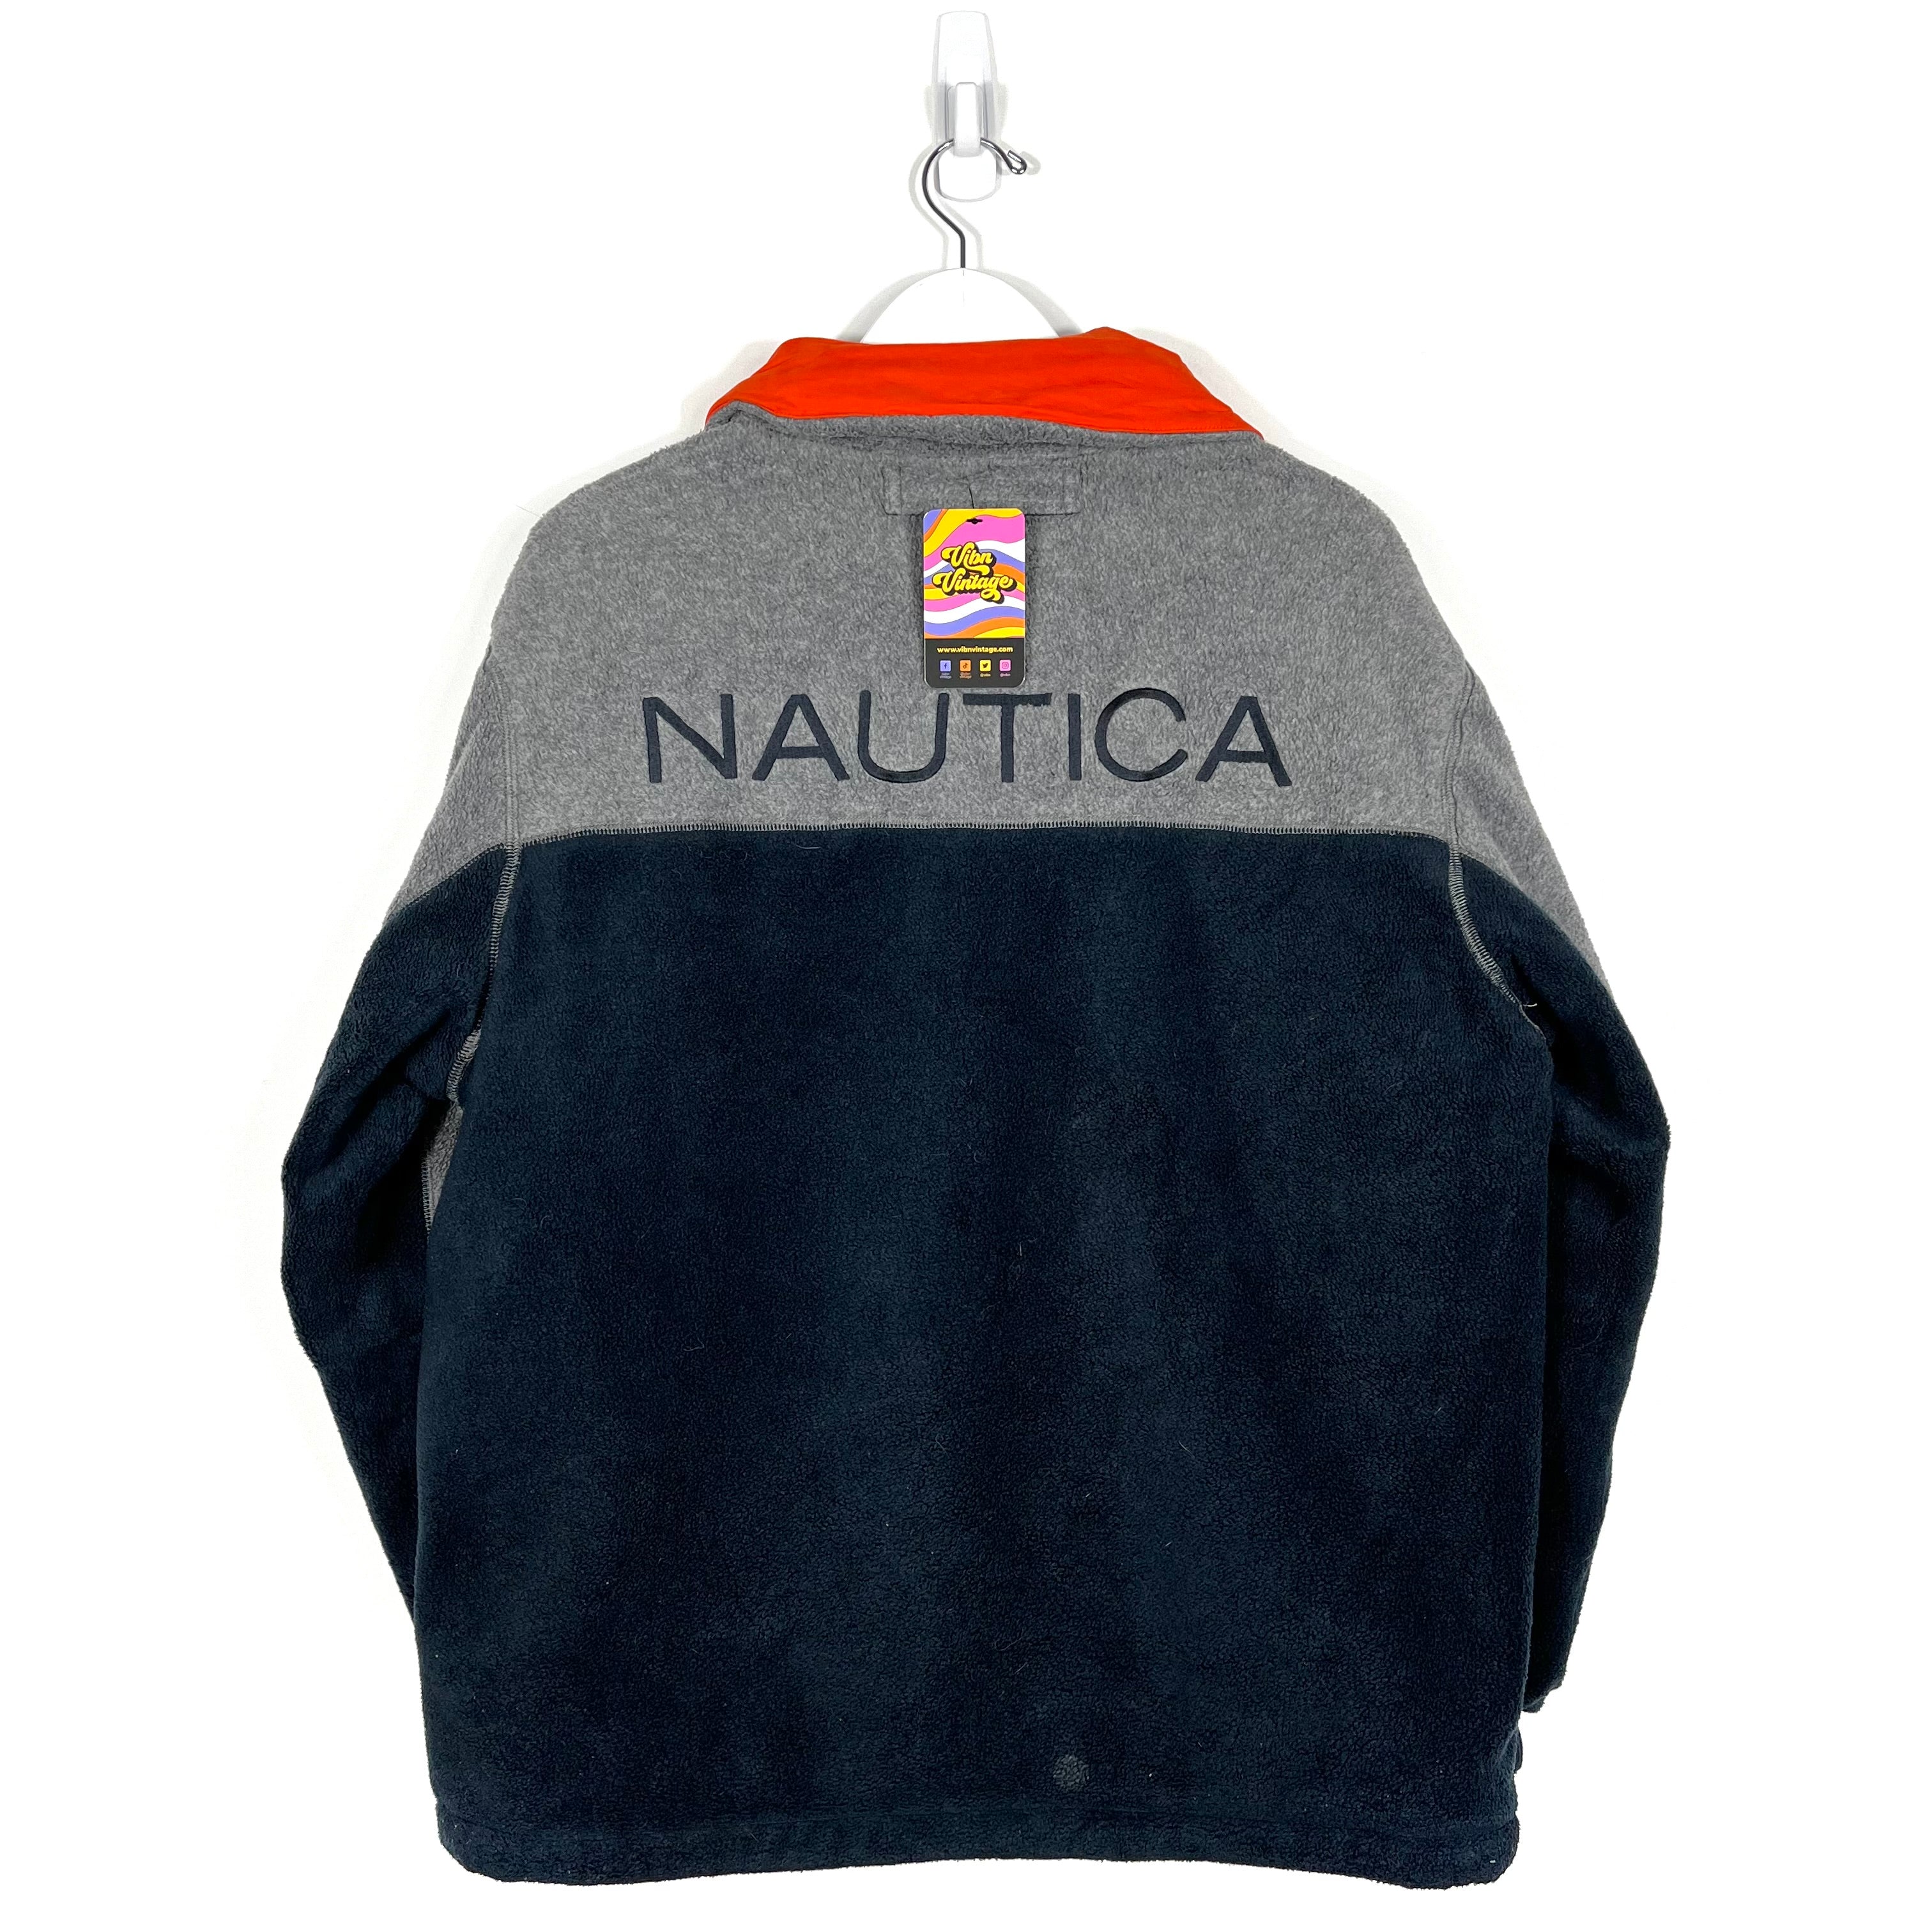 Nautica Reversible Fleece Jacket - Men's Small